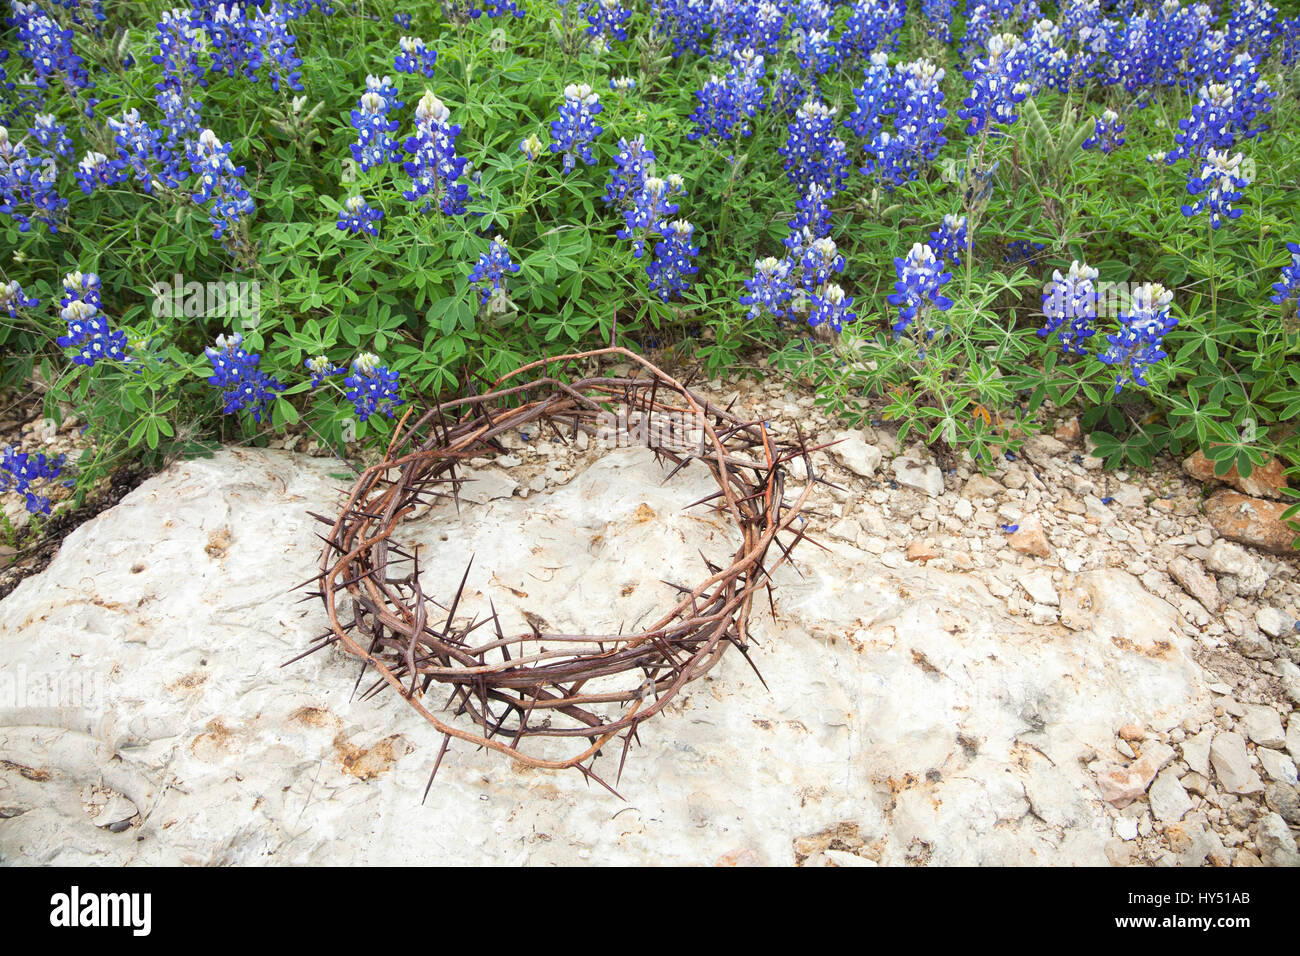 Une couronne d'épines est assis sur un rocher à côté d'un patch du Texas bluebonnets Banque D'Images